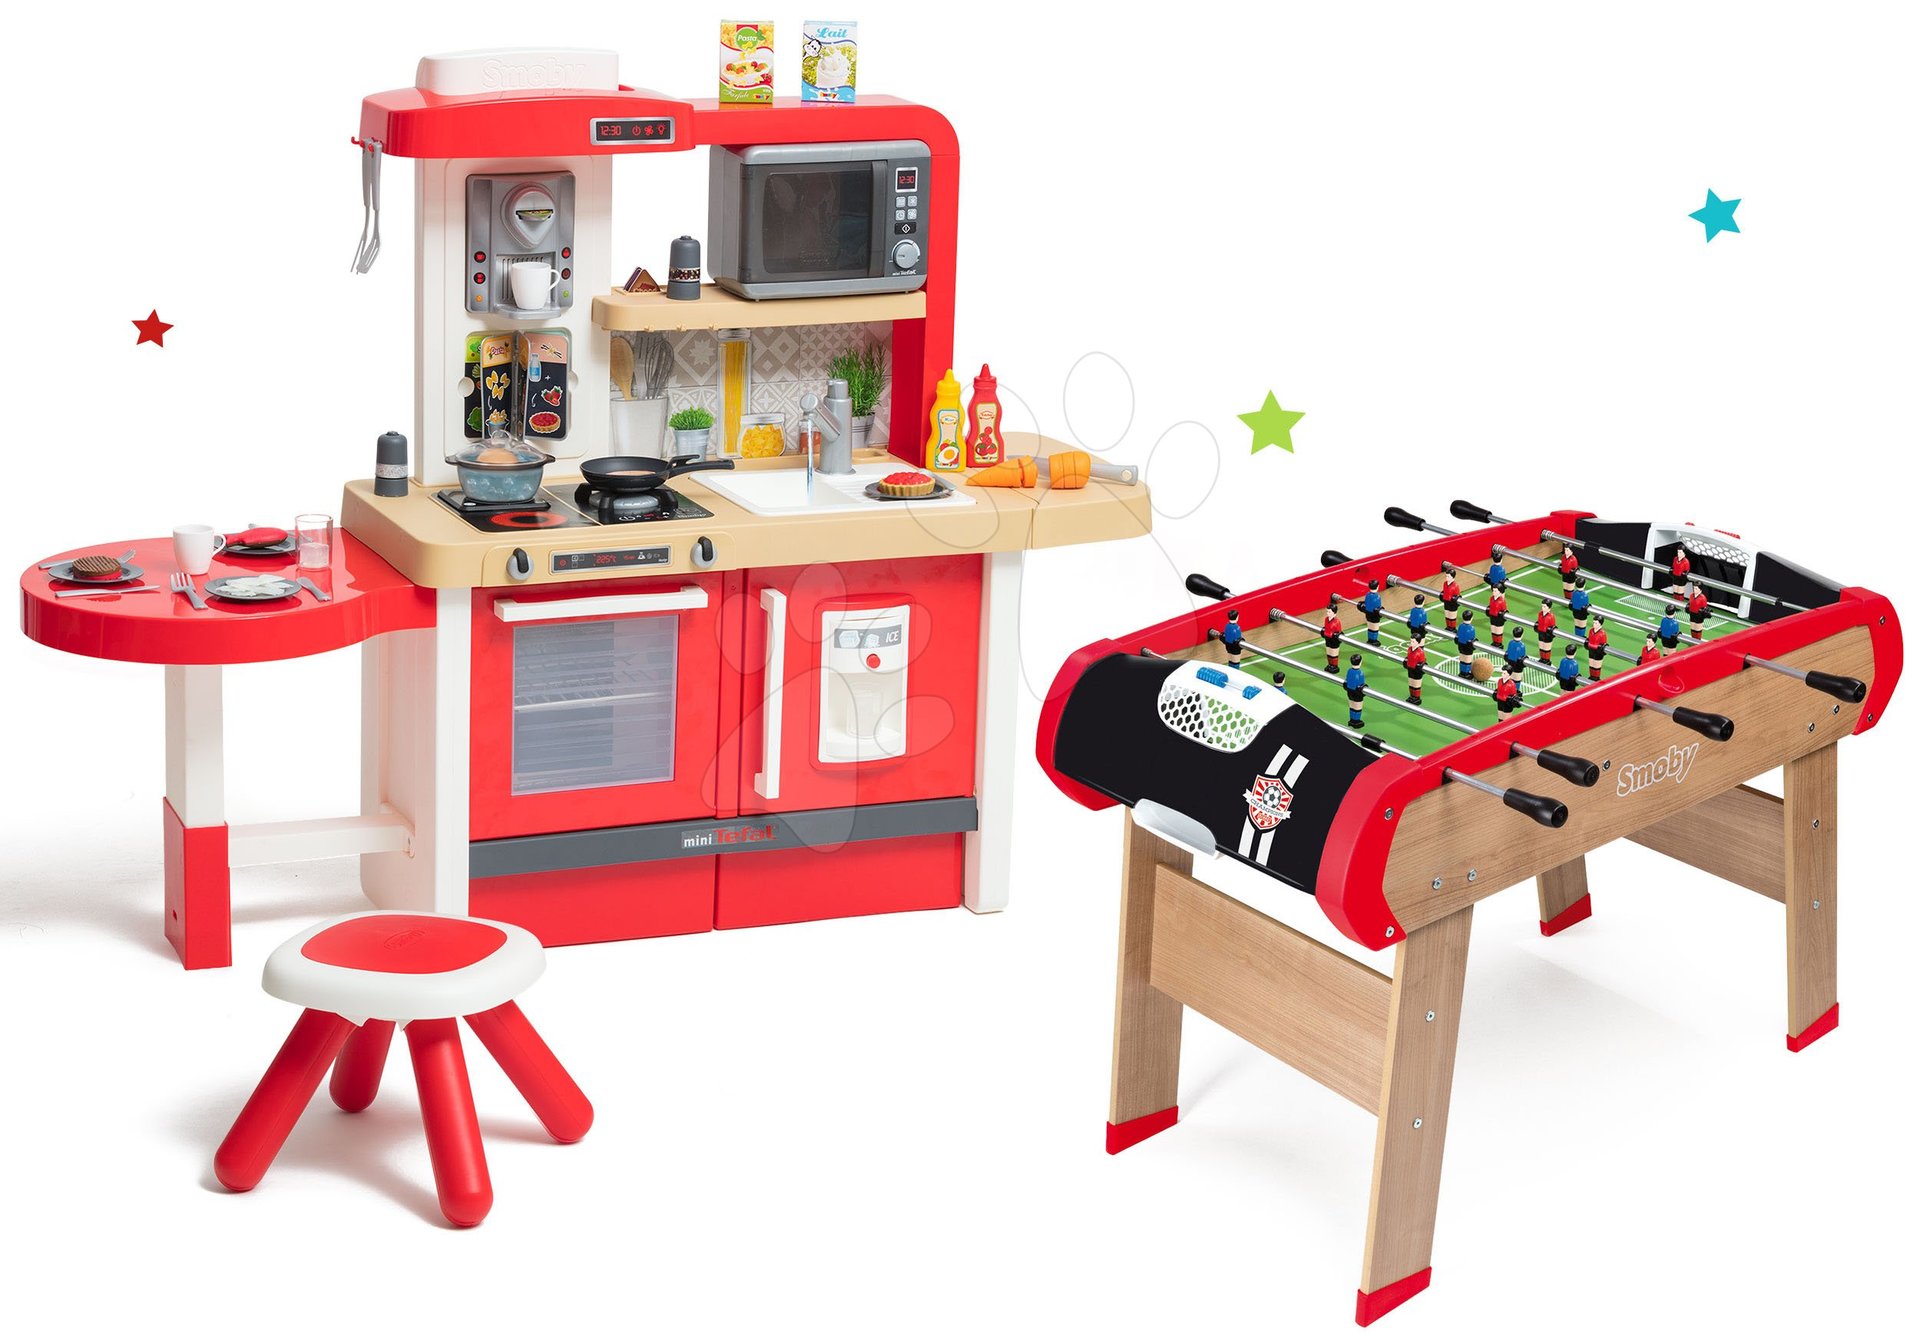 Kuchyňky pro děti sety - Set kuchyňka rostoucí s tekoucí vodou a mikrovlnkou Tefal Evolutive Smoby a dřevěný fotbalový stůl BBF Champions